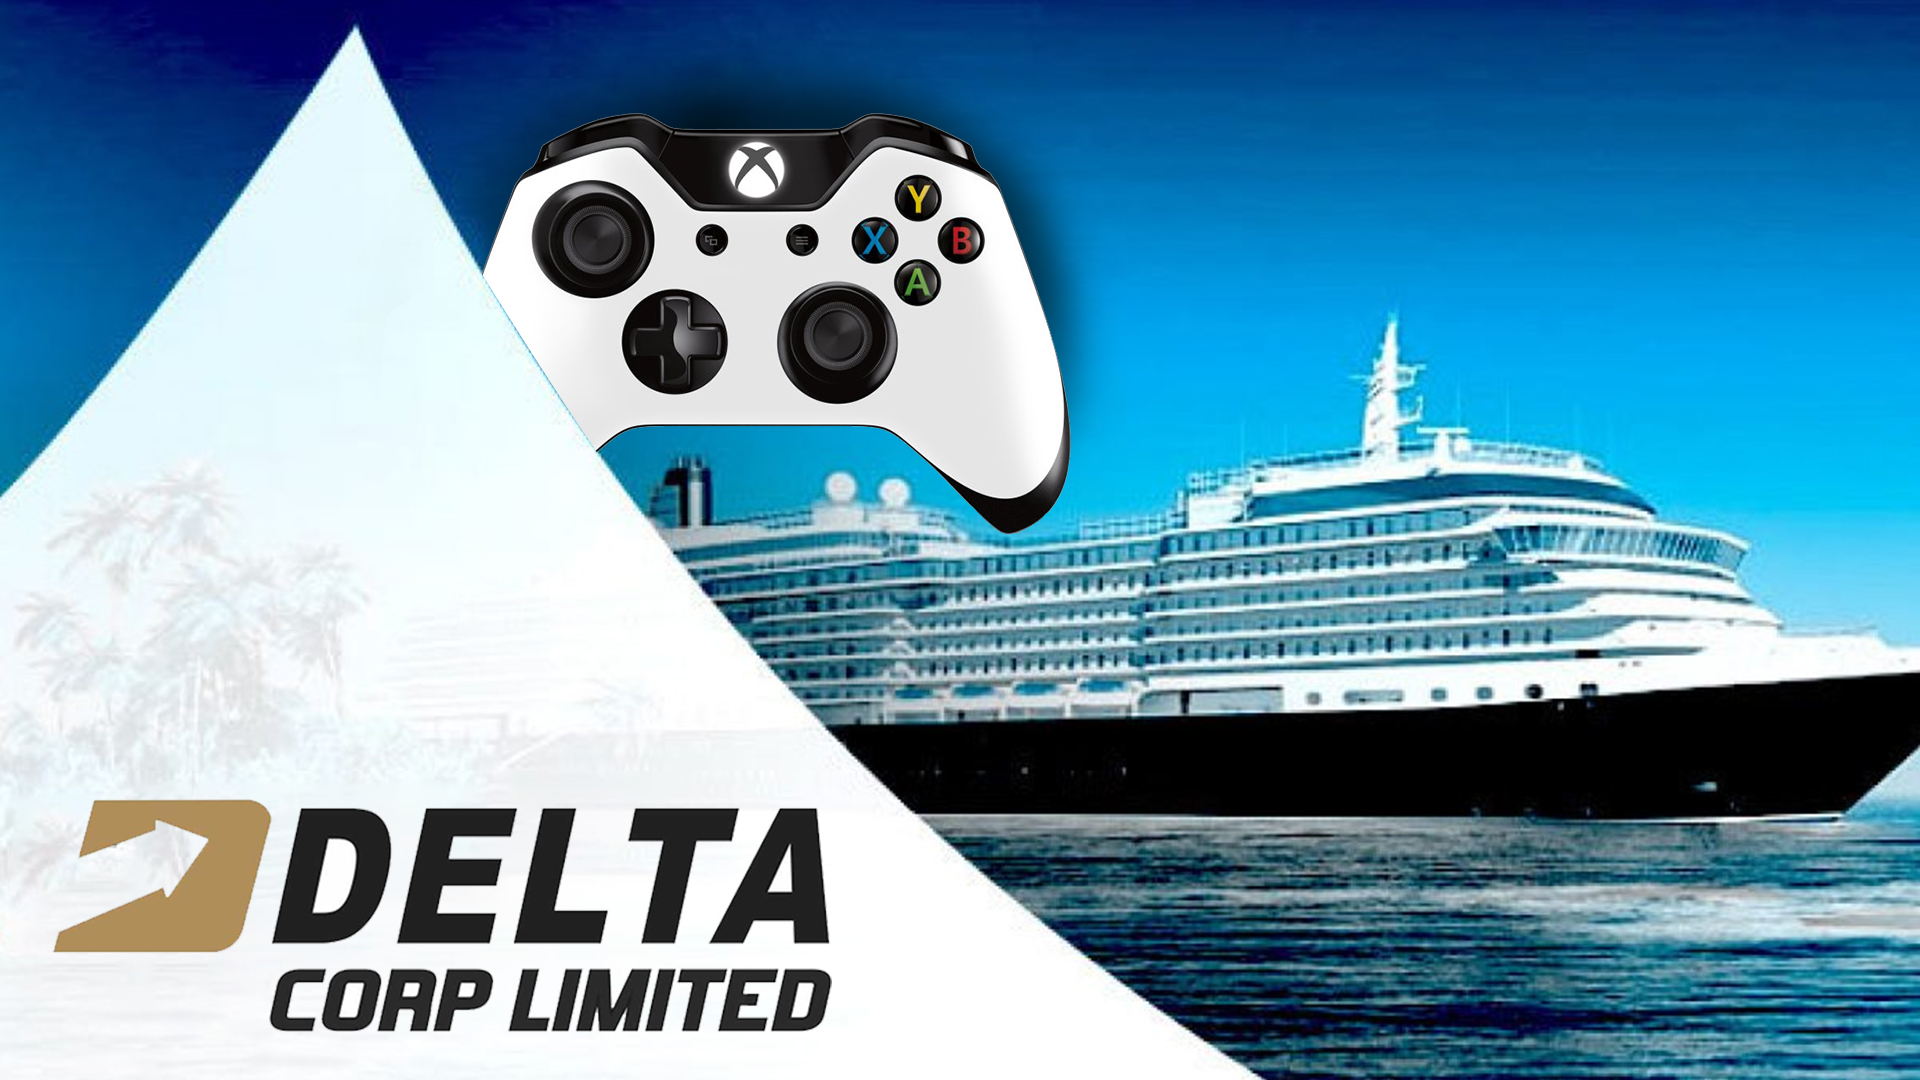 Peningkatan modal hingga $50 juta untuk mengembangkan divisi game online Delta Corp